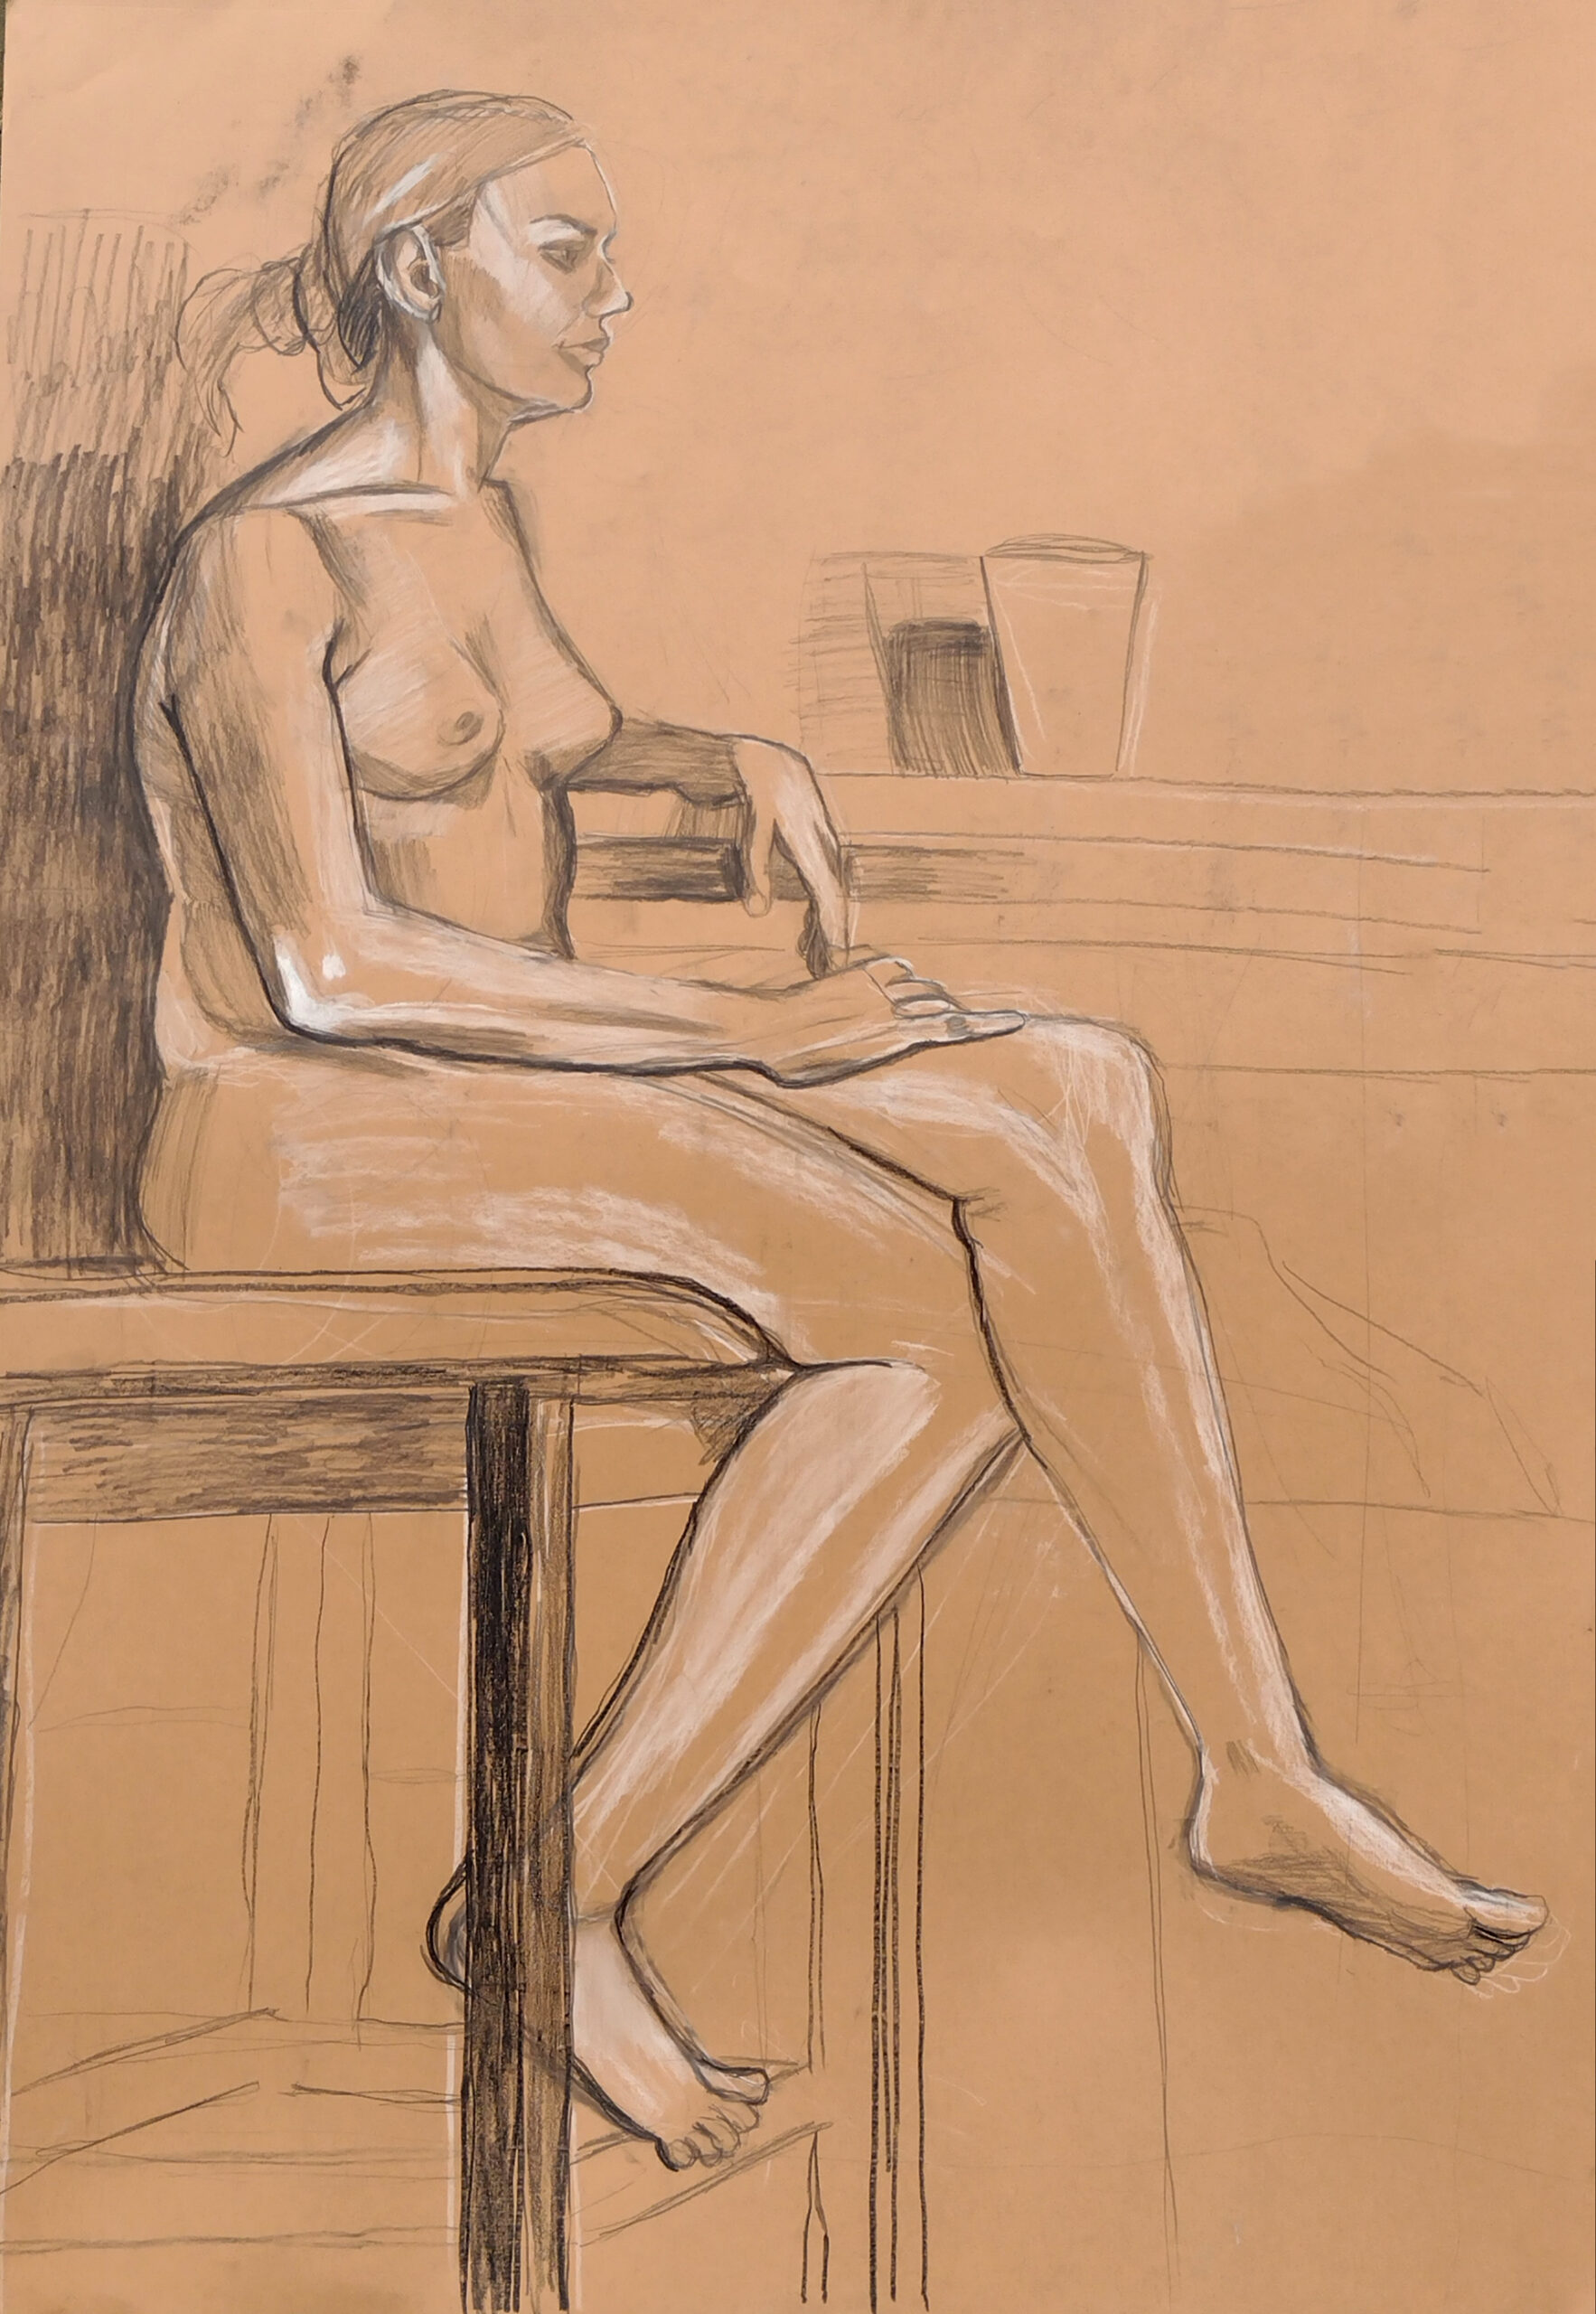 Zdjęcie przedstawia studium modelki siedzącej na taborecie, ujętej z profilu. Rysunek wykonany techniką mieszaną (węgiel, biała pastela, ołówek) na formacie papieru 70x100 cm.